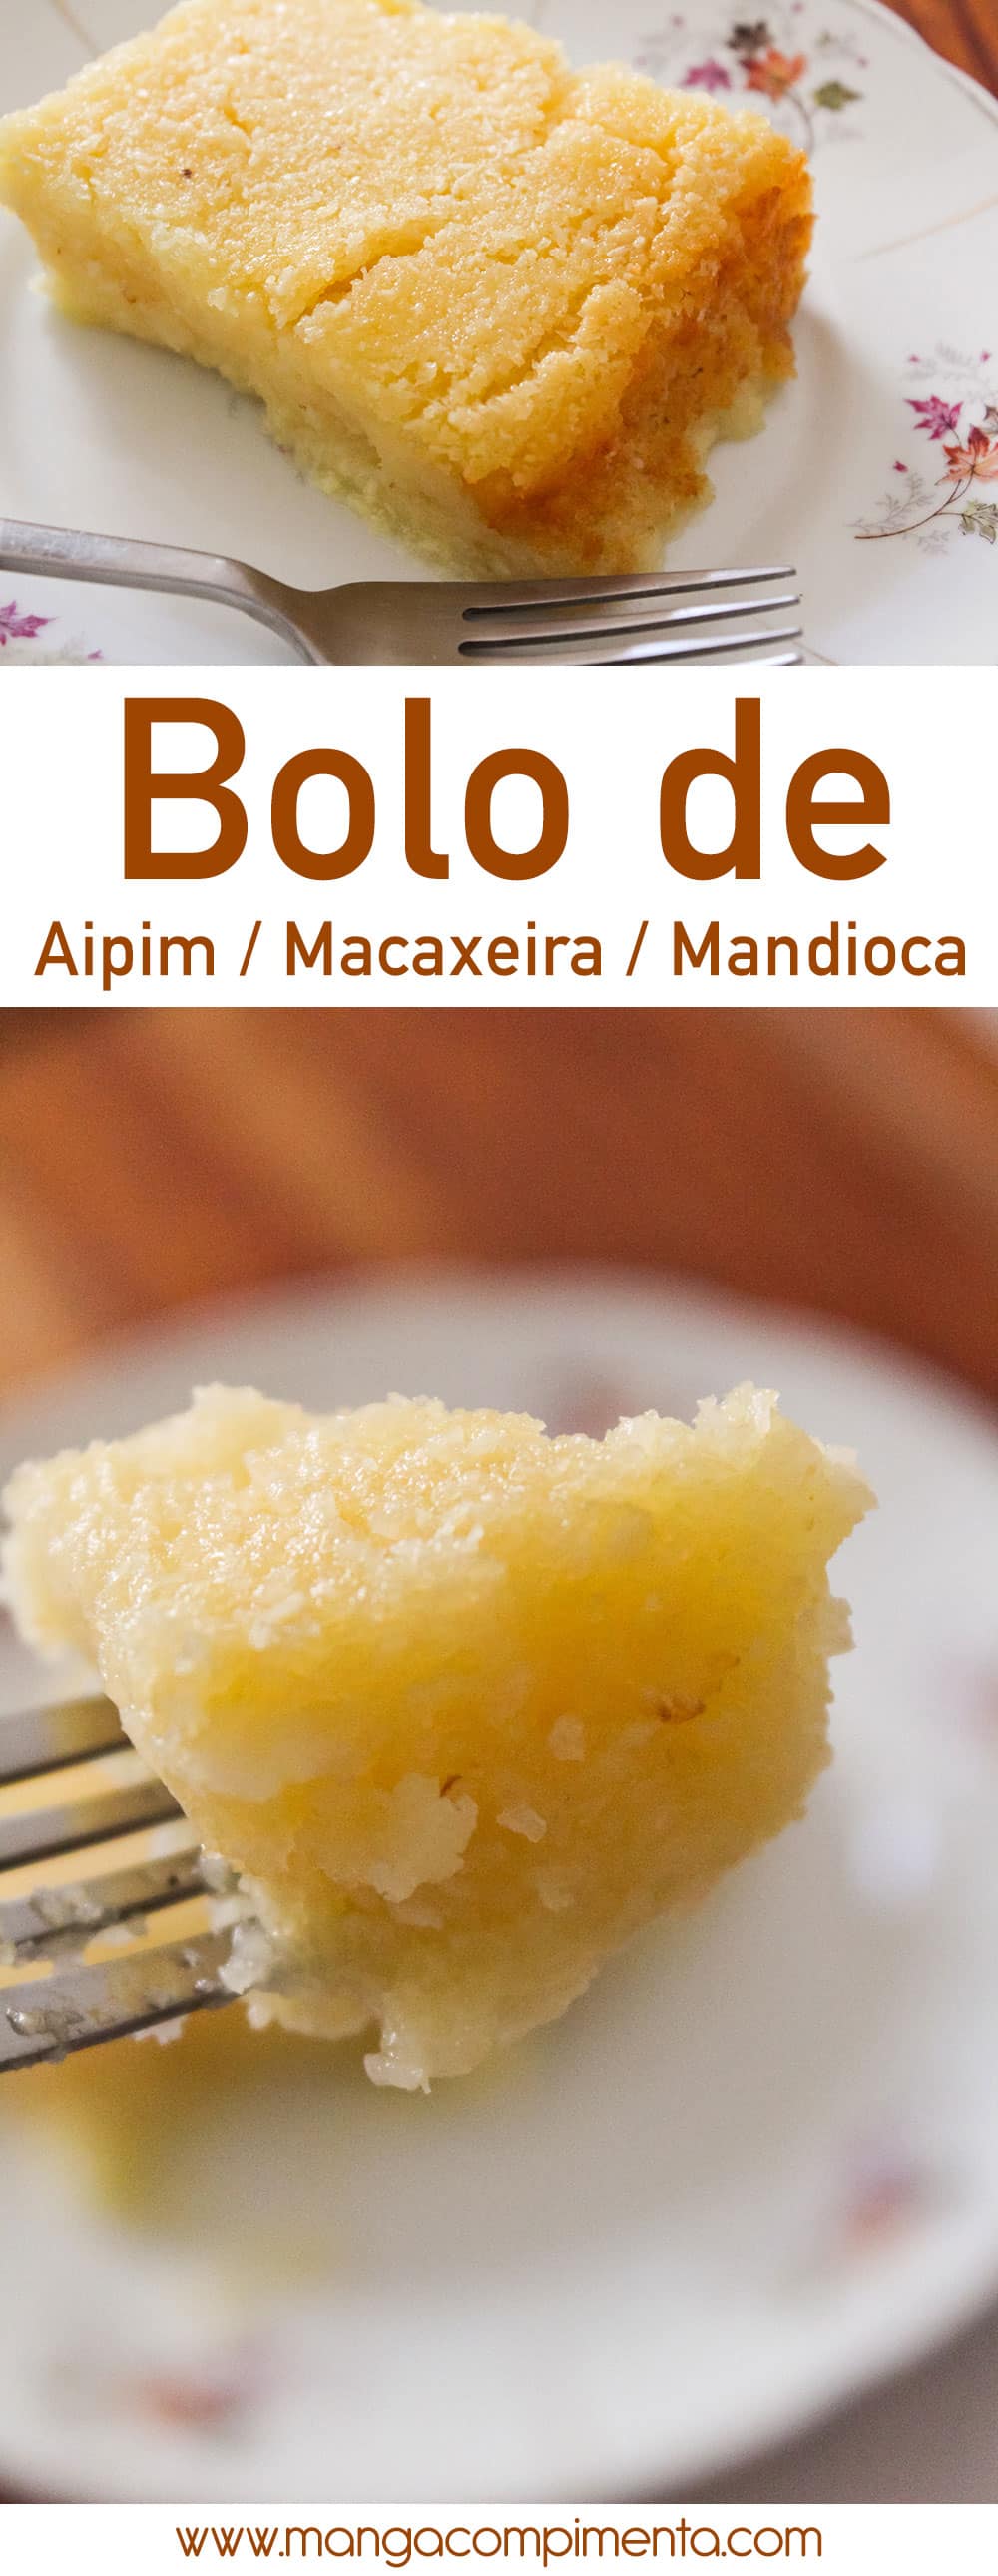 Bolo de Aipim - também conhecido como Macaxeira ou Mandioca, é uma receita bacana para fazer neste friozinho de inverno para o chá da tarde.